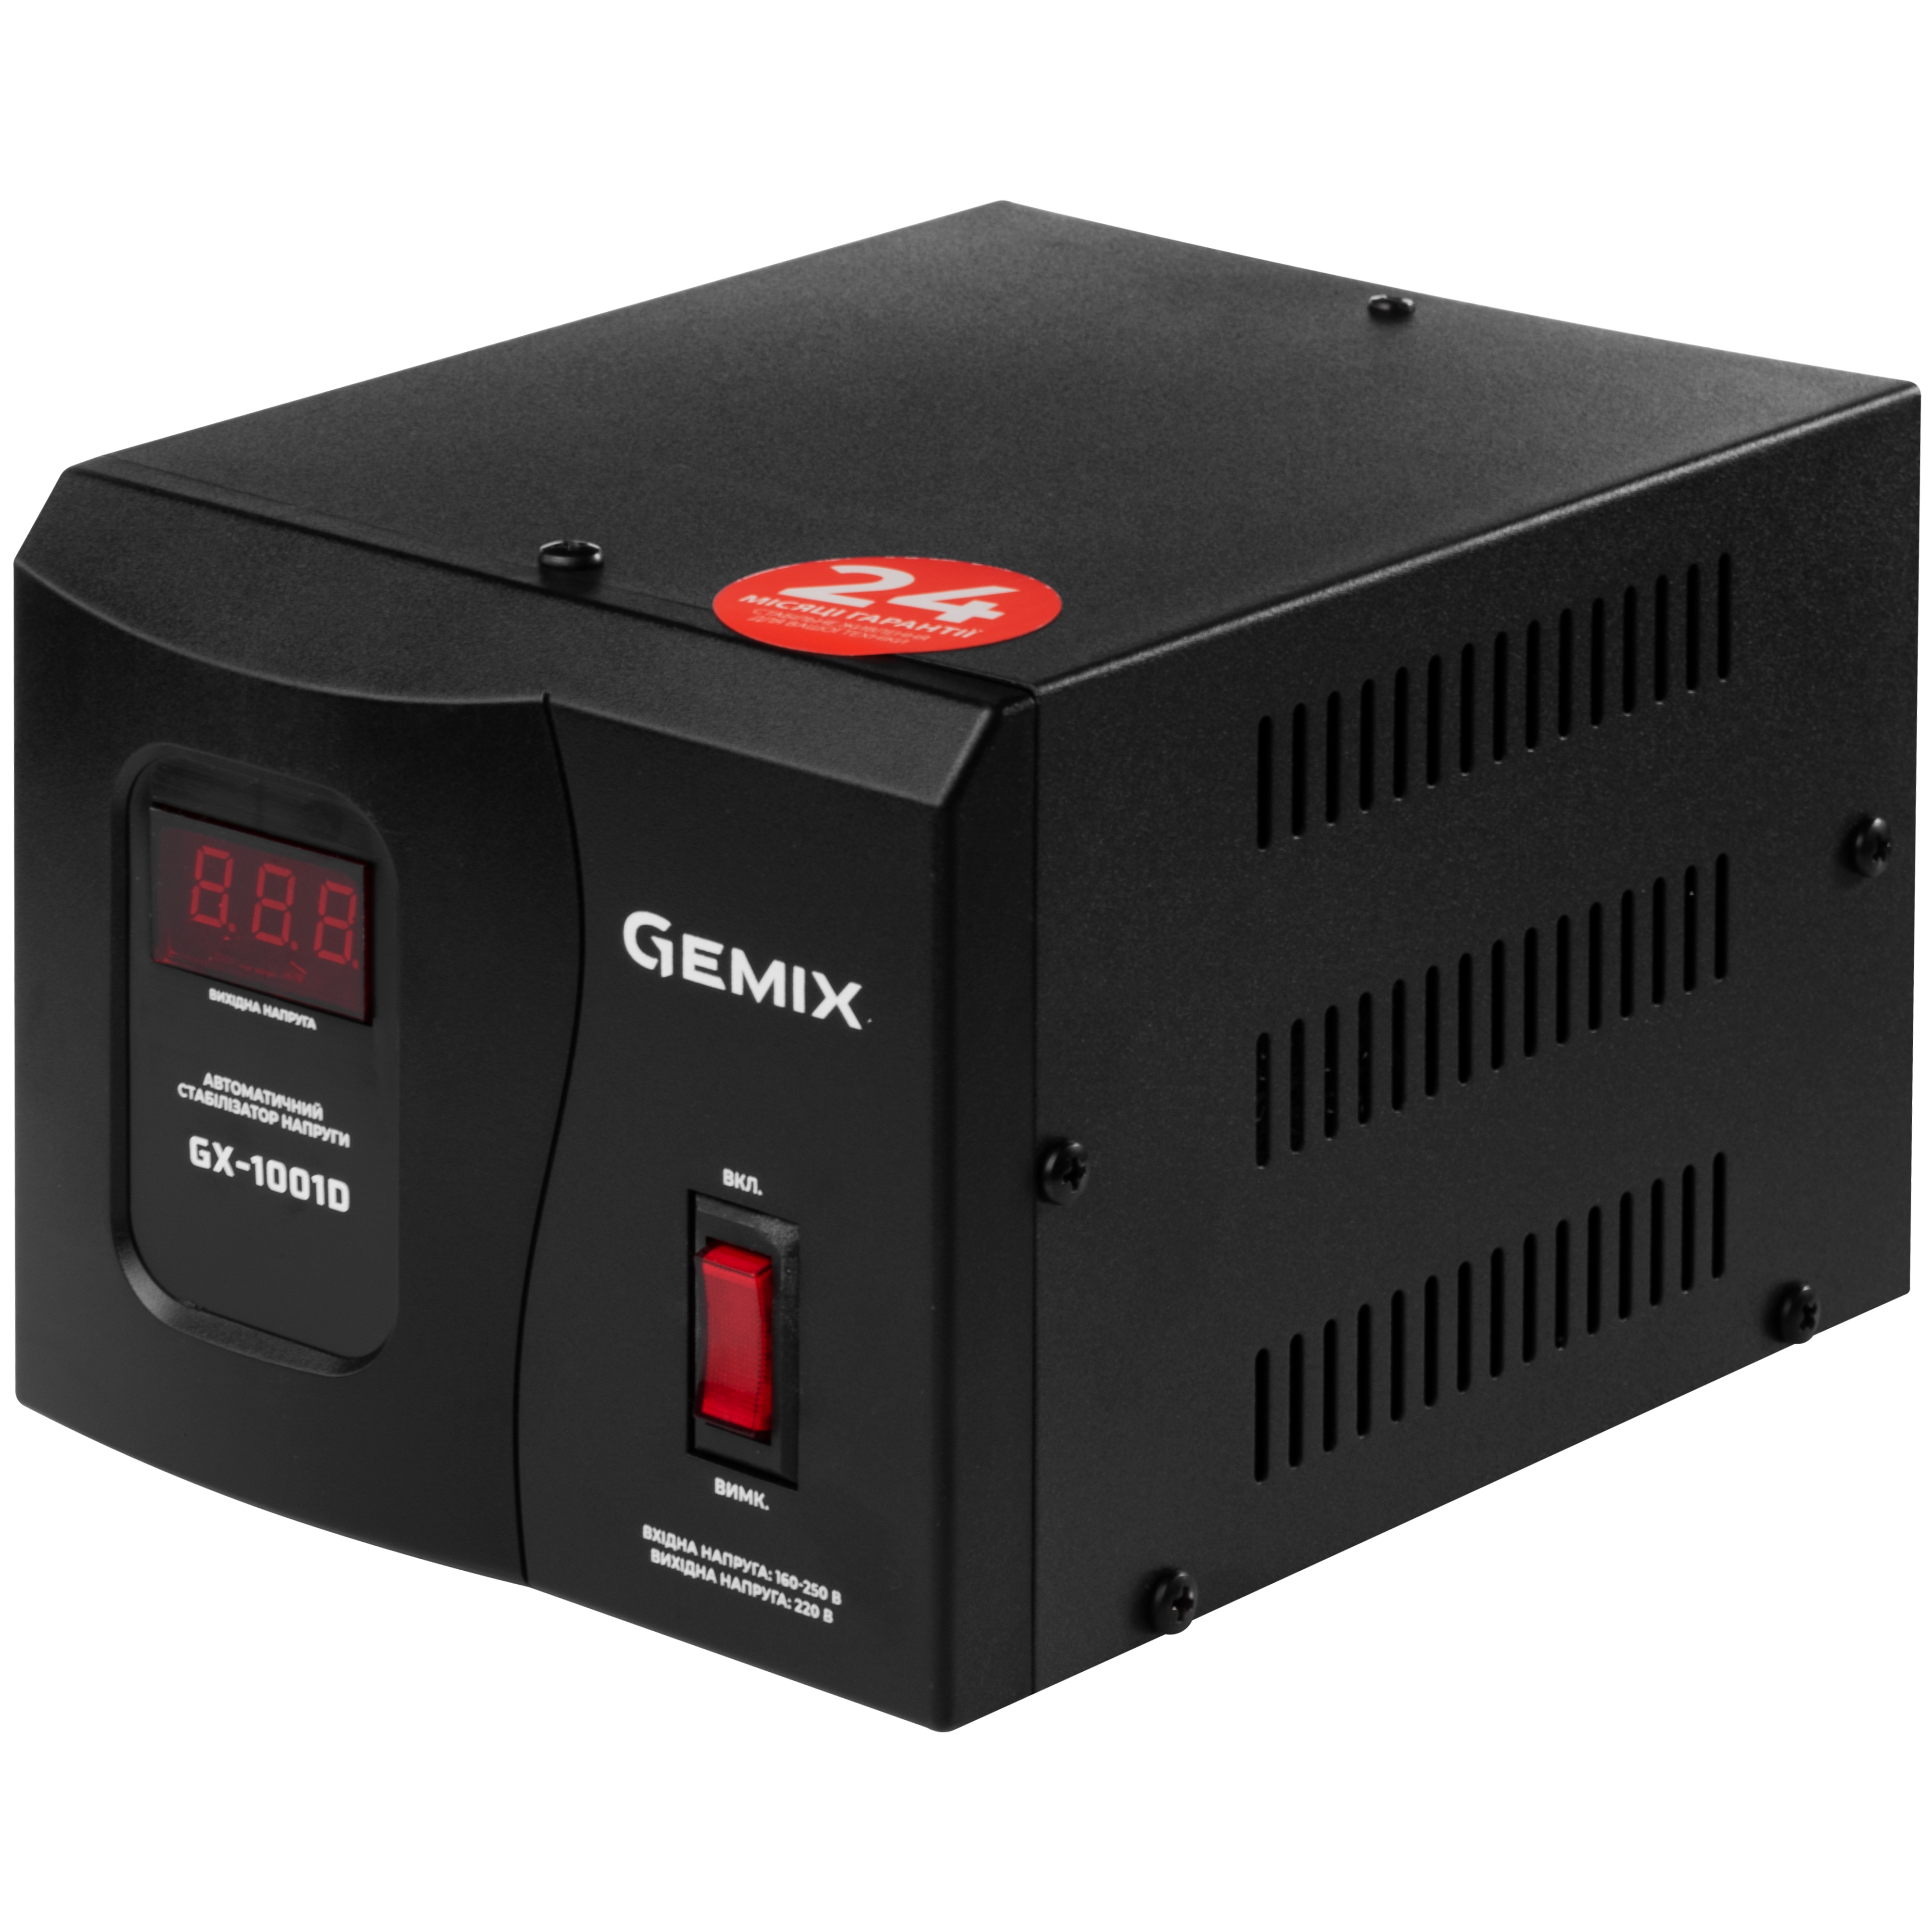 Gemix GX-1001D